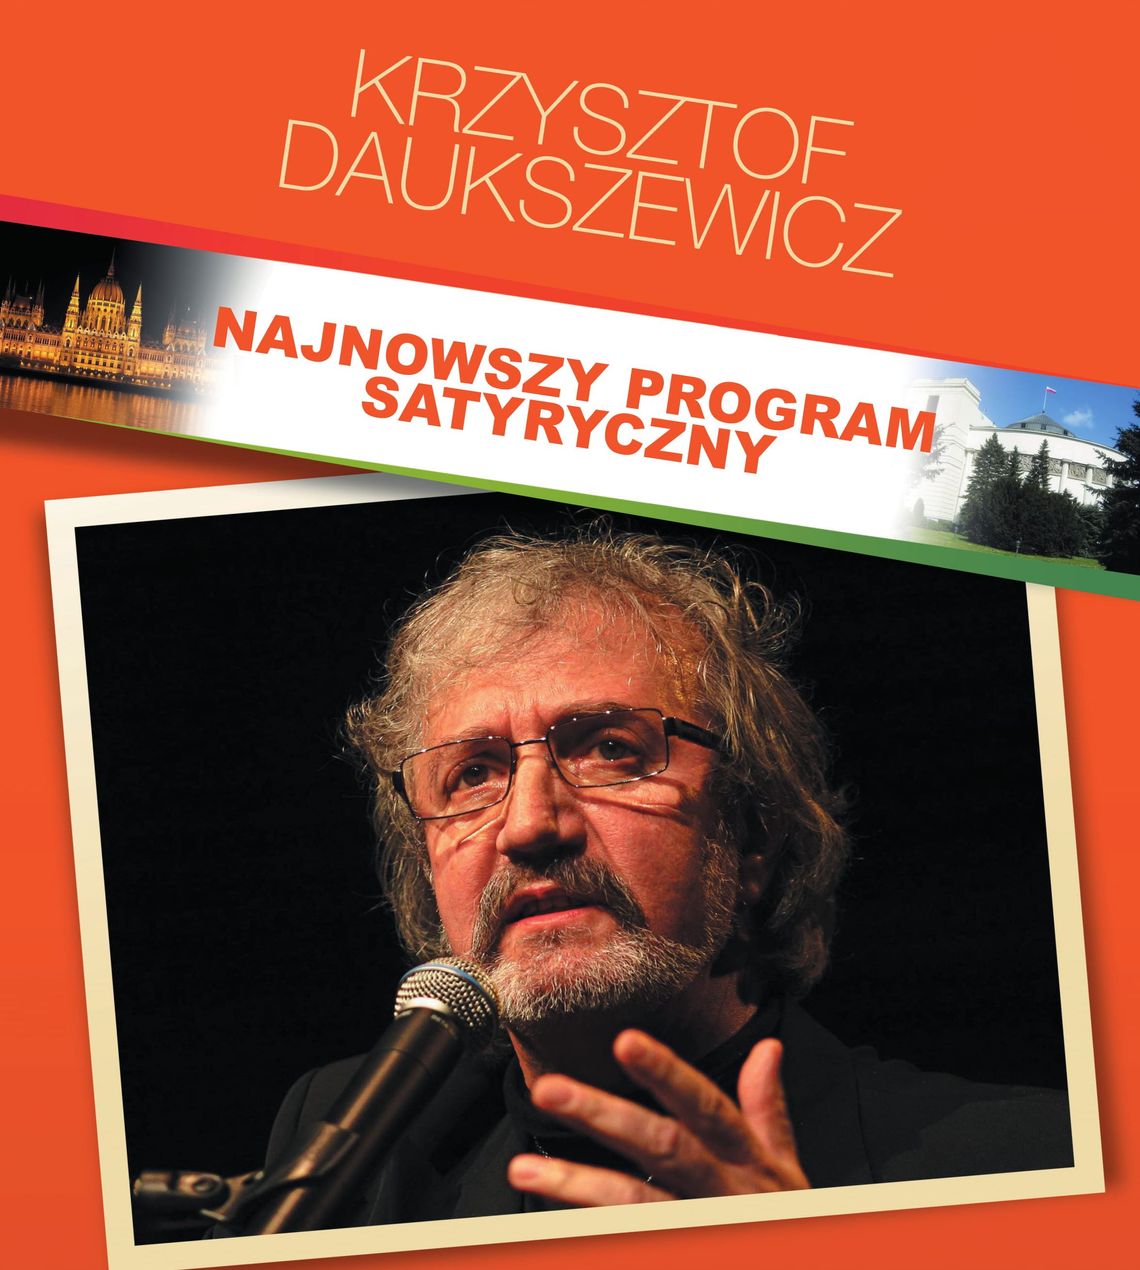 Najnowszy program satyryczny Krzysztofa Daukszewicza